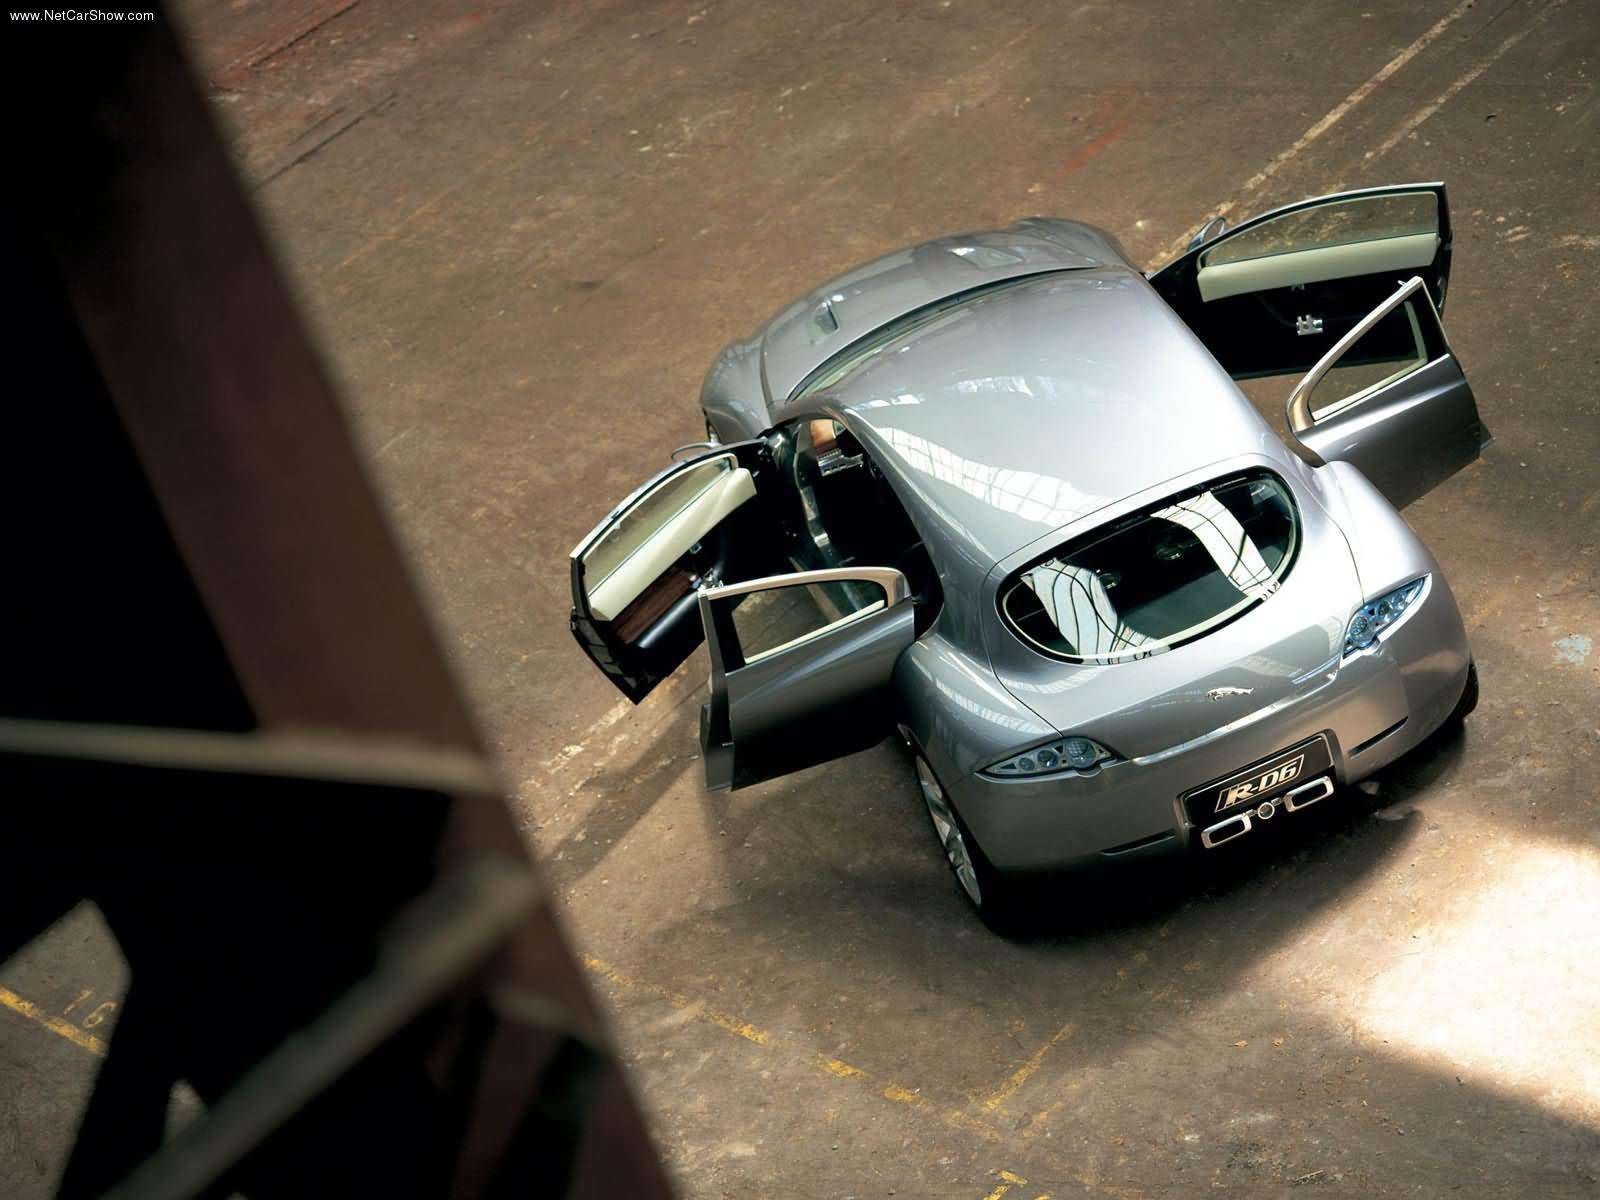 jaguar, Rd6, Concept, Cars, 2003 Wallpaper